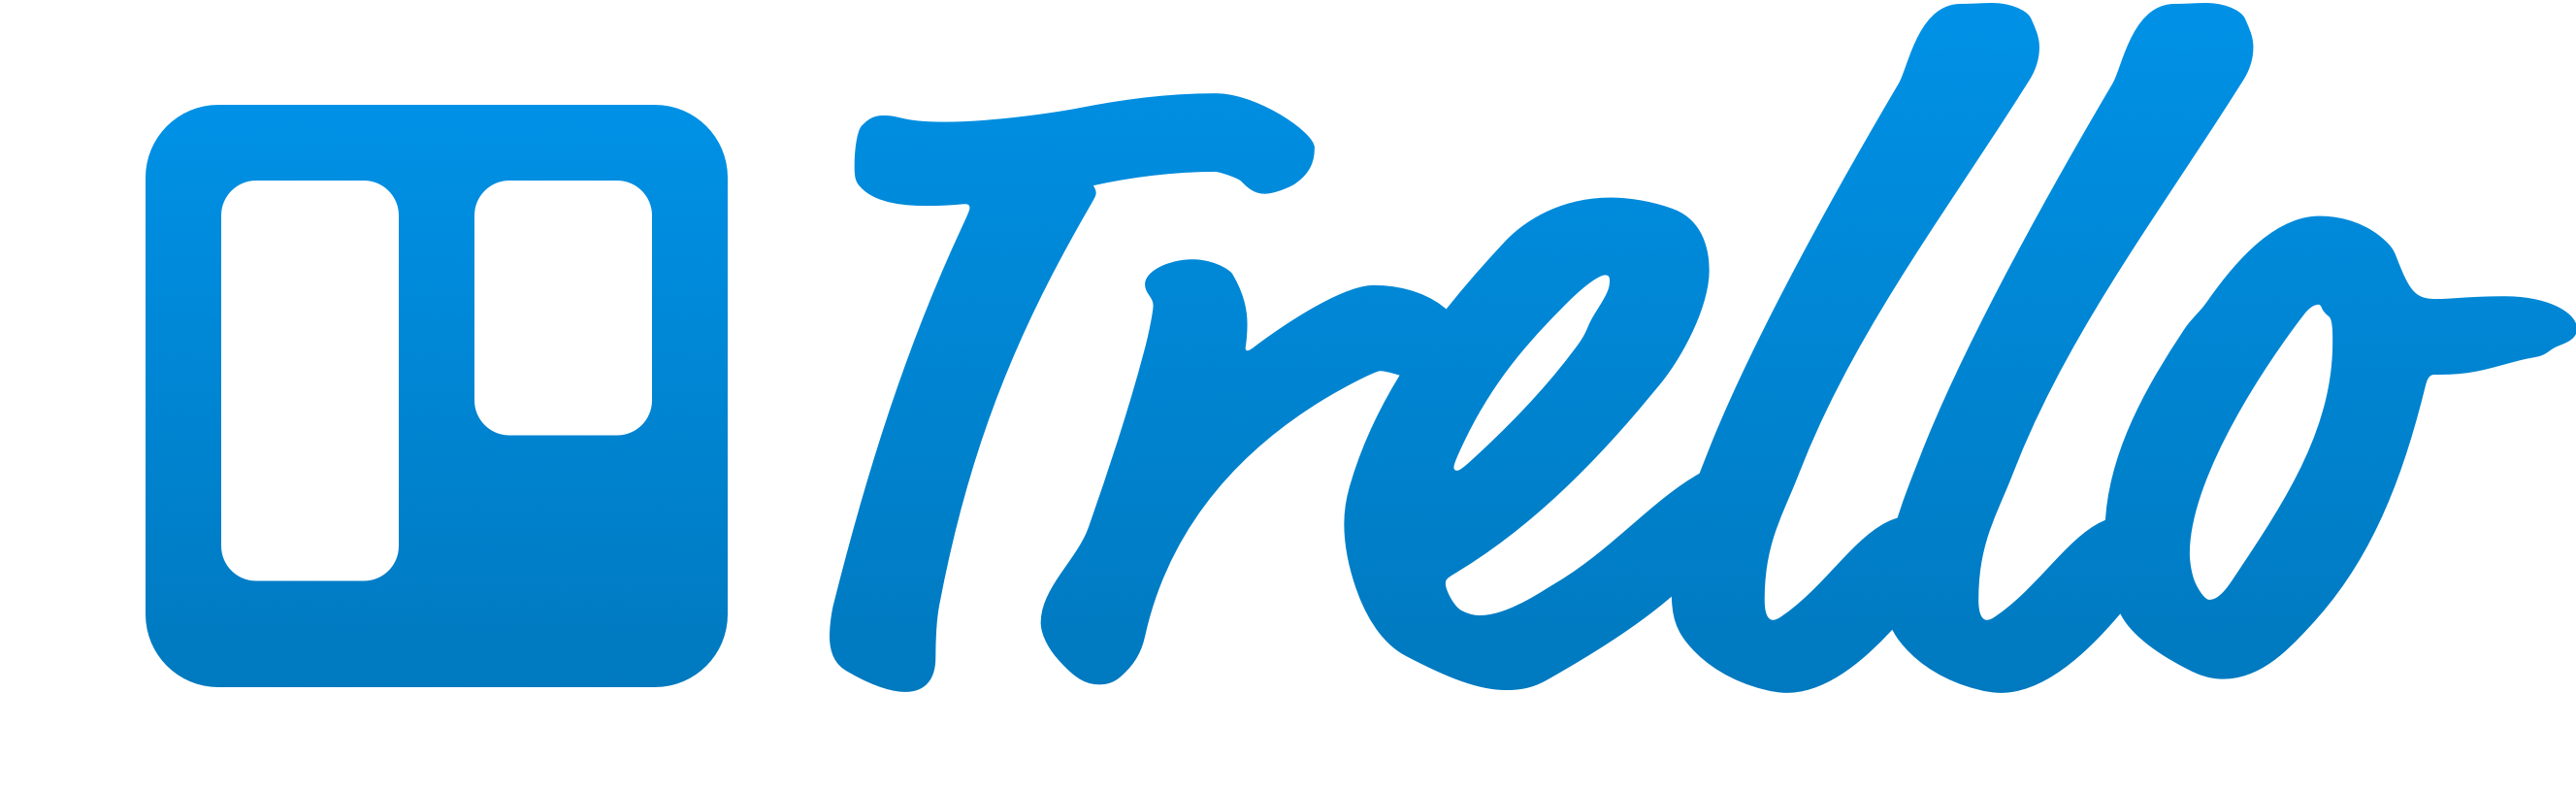 Trello Logo Blue